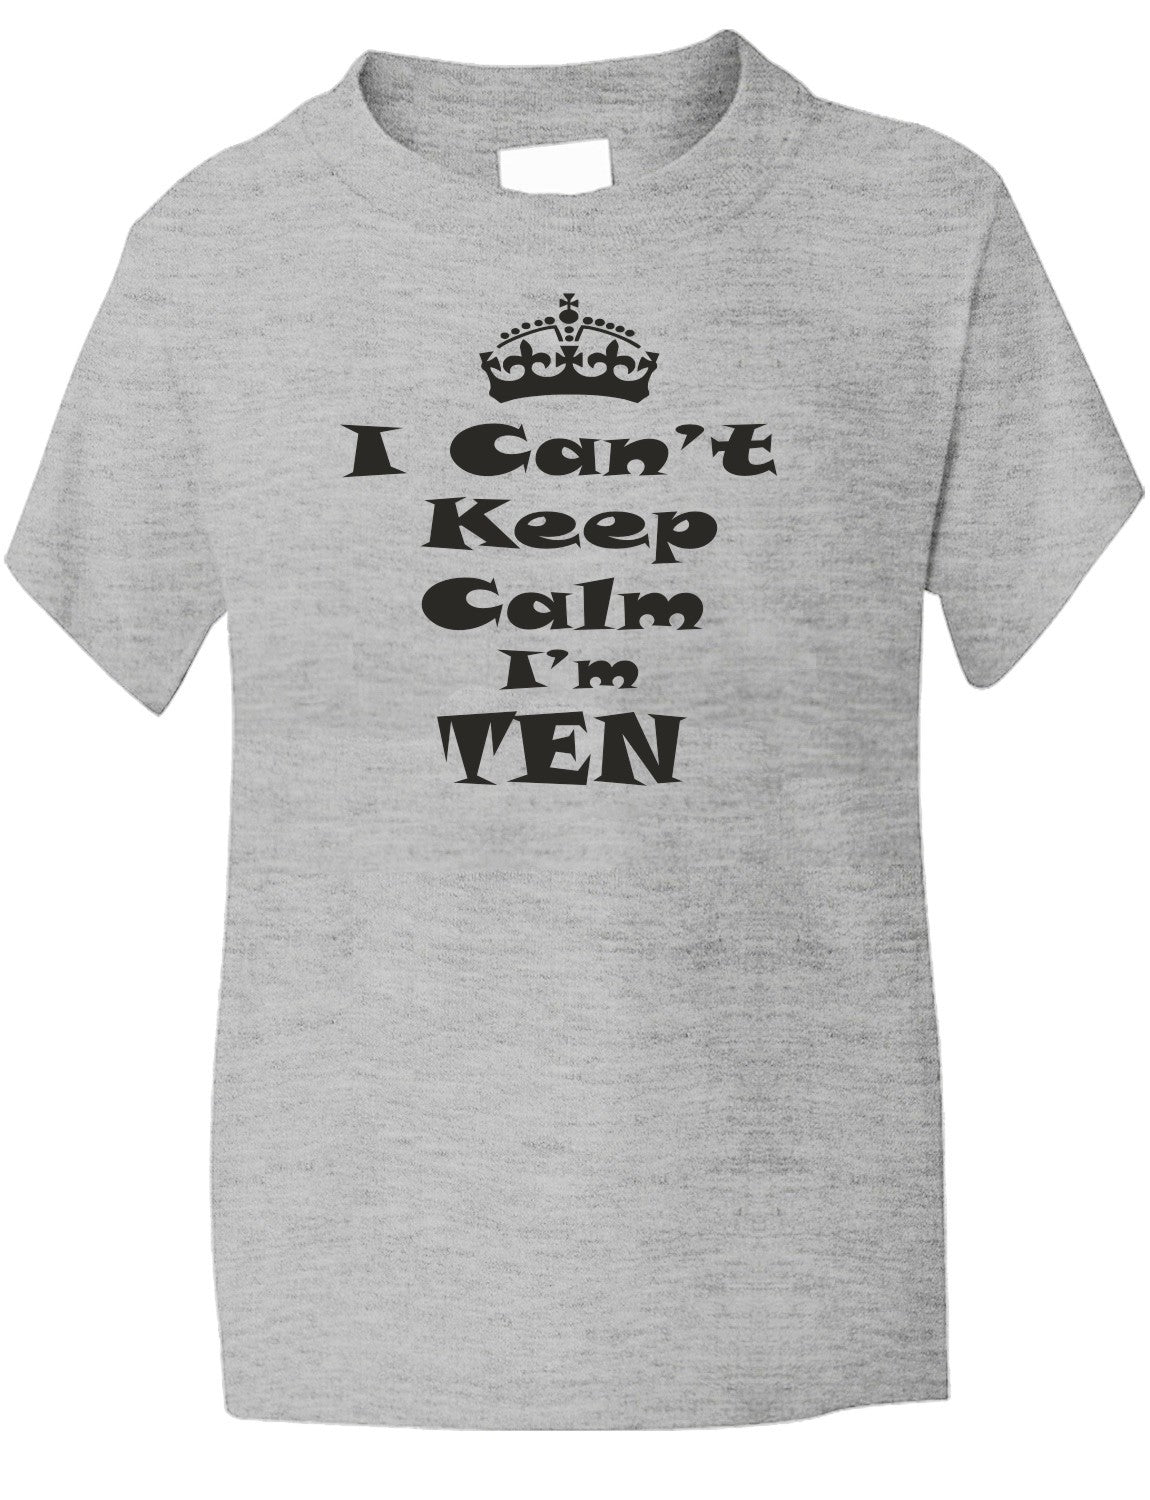 Keep Calm I'm Ten Kids T-Shirt